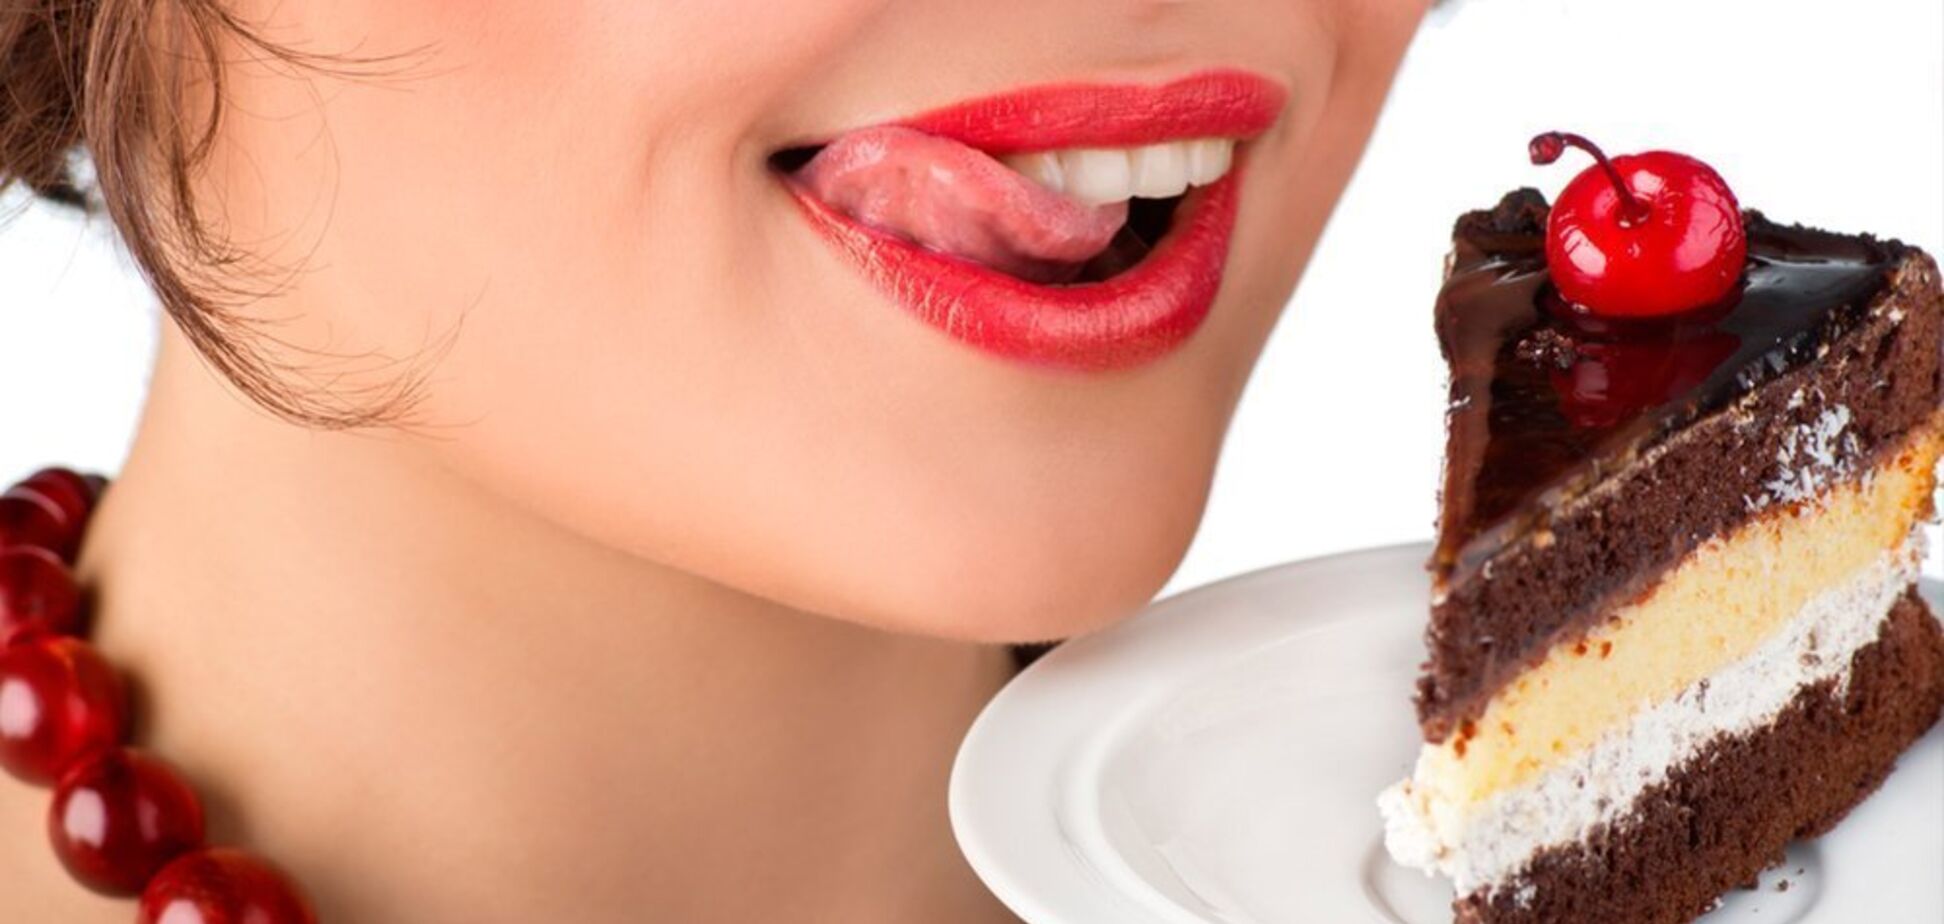 Без вреда для фигуры: диетолог поделилась рецептами диетических десертов